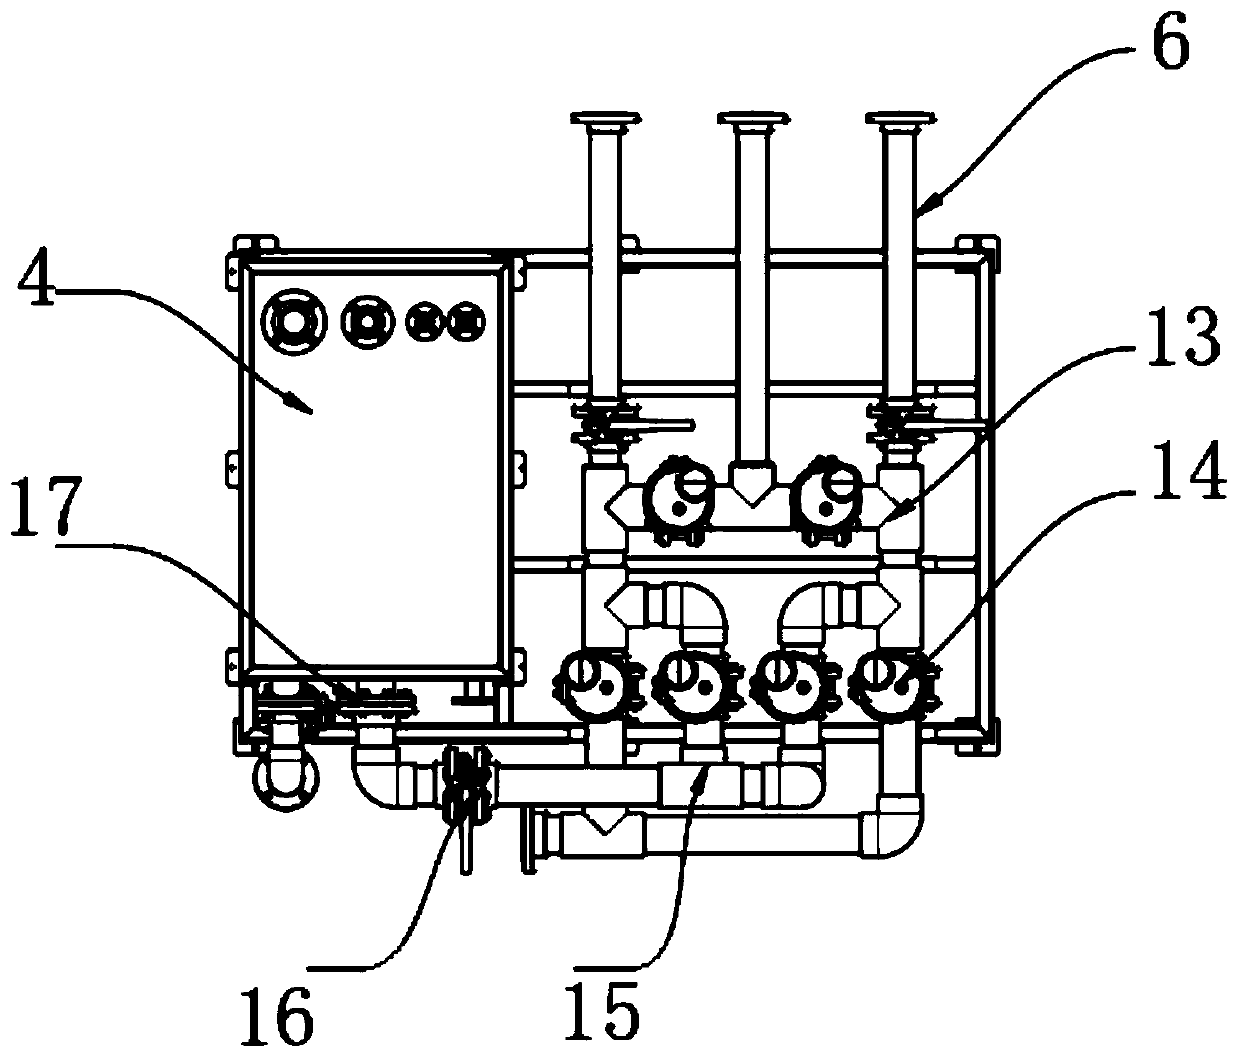 Ventilation cooling device for transformer substation